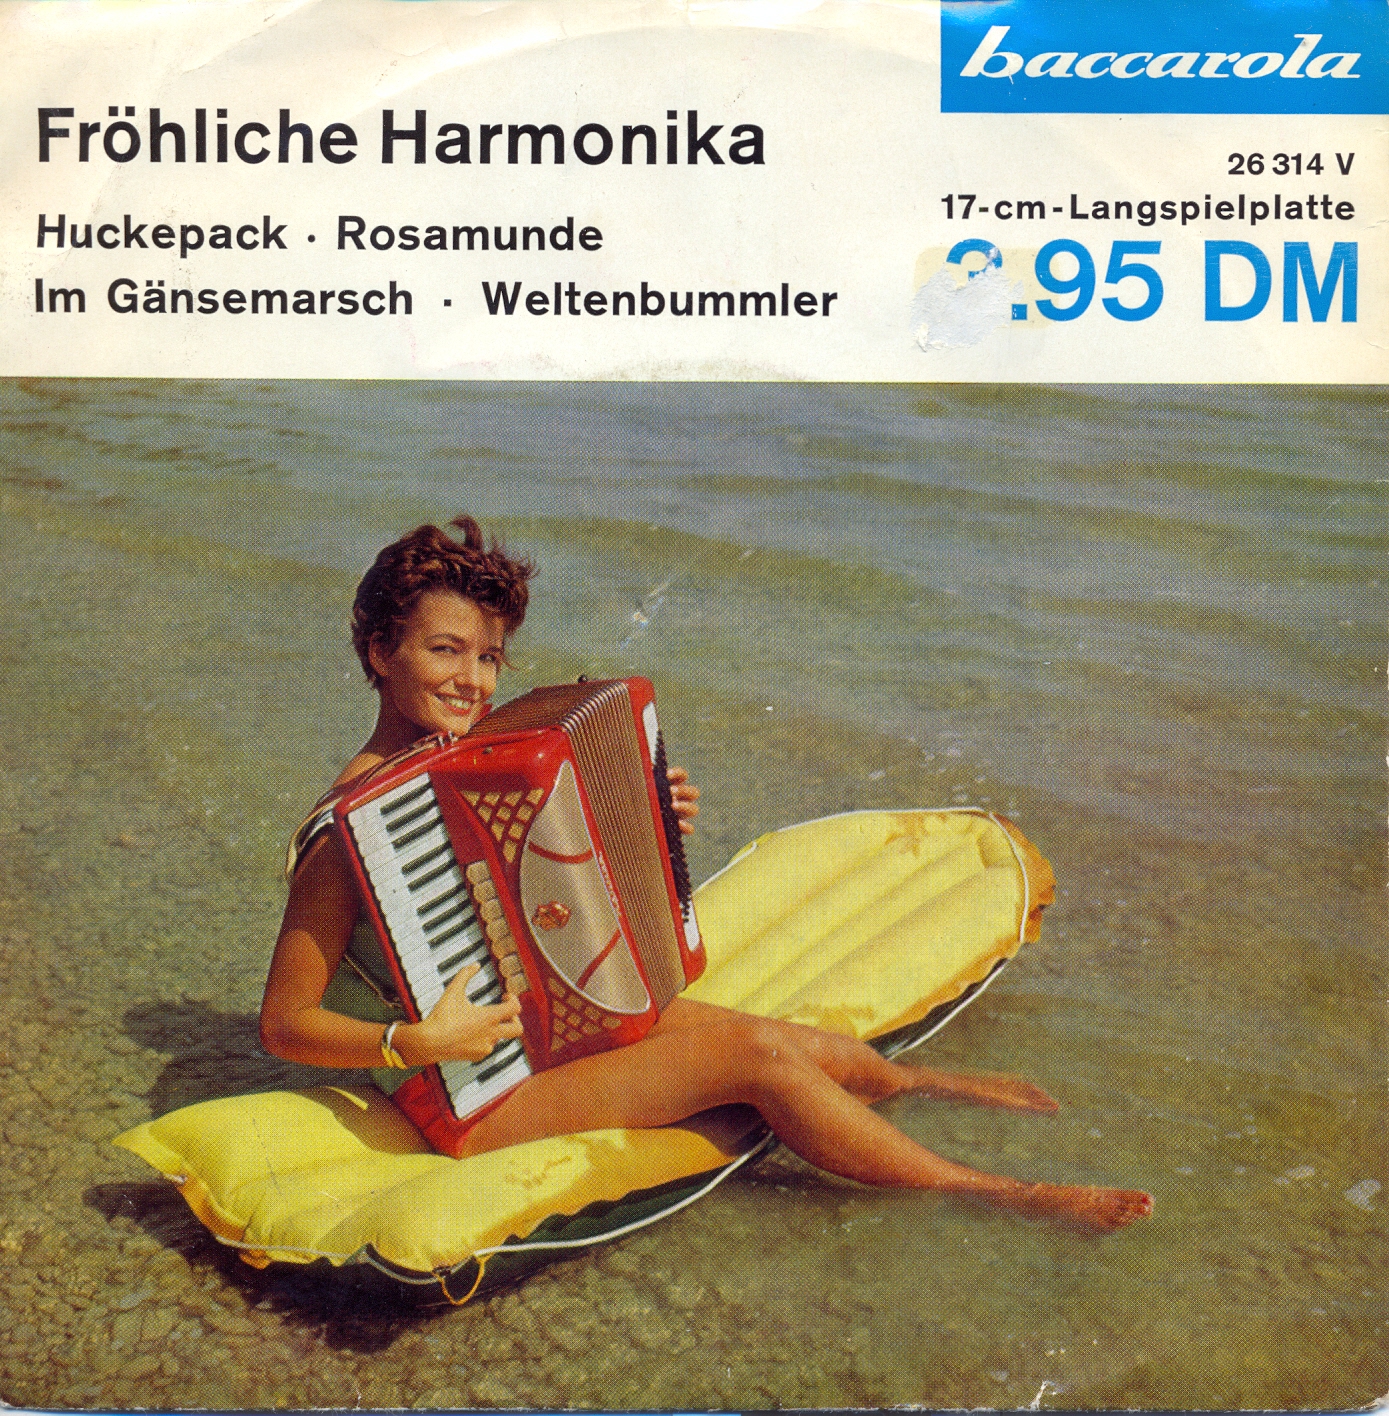 Baccarola EP Nr. 26314 - Frhliche Harmonika